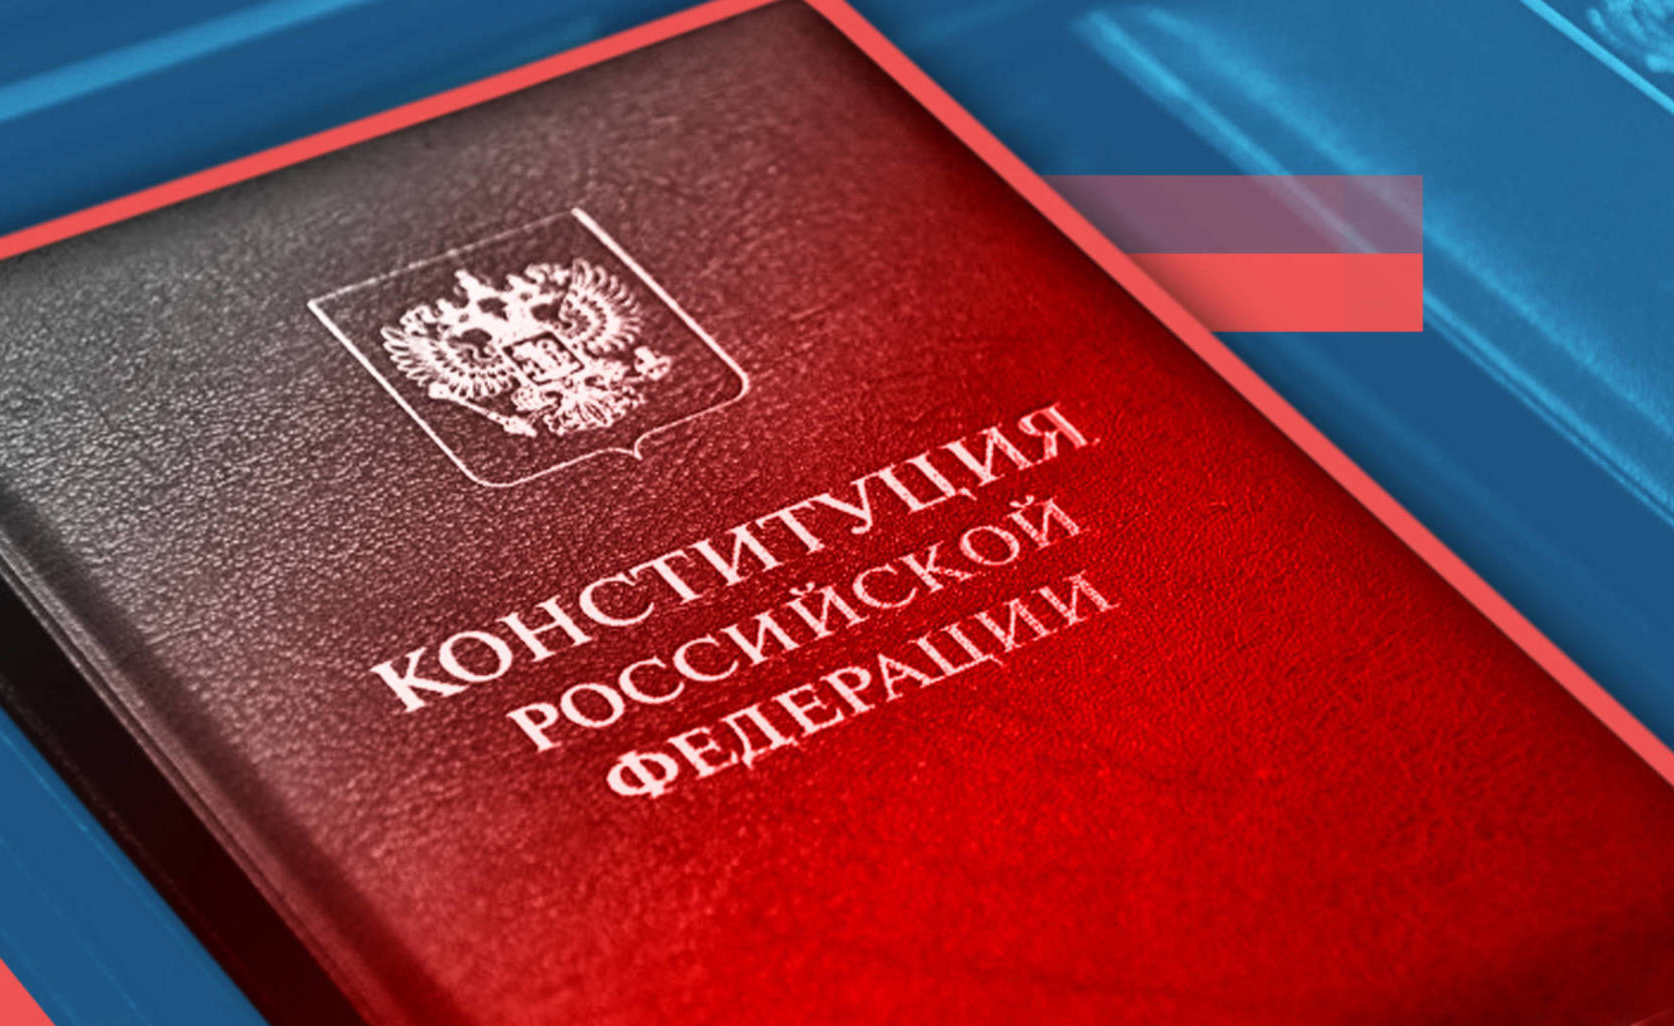 Сегодня Государственная Дума приняла в окончательном третьем чтении законопроекты, внесенные Президентом во исполнение обновленных положений Конституции